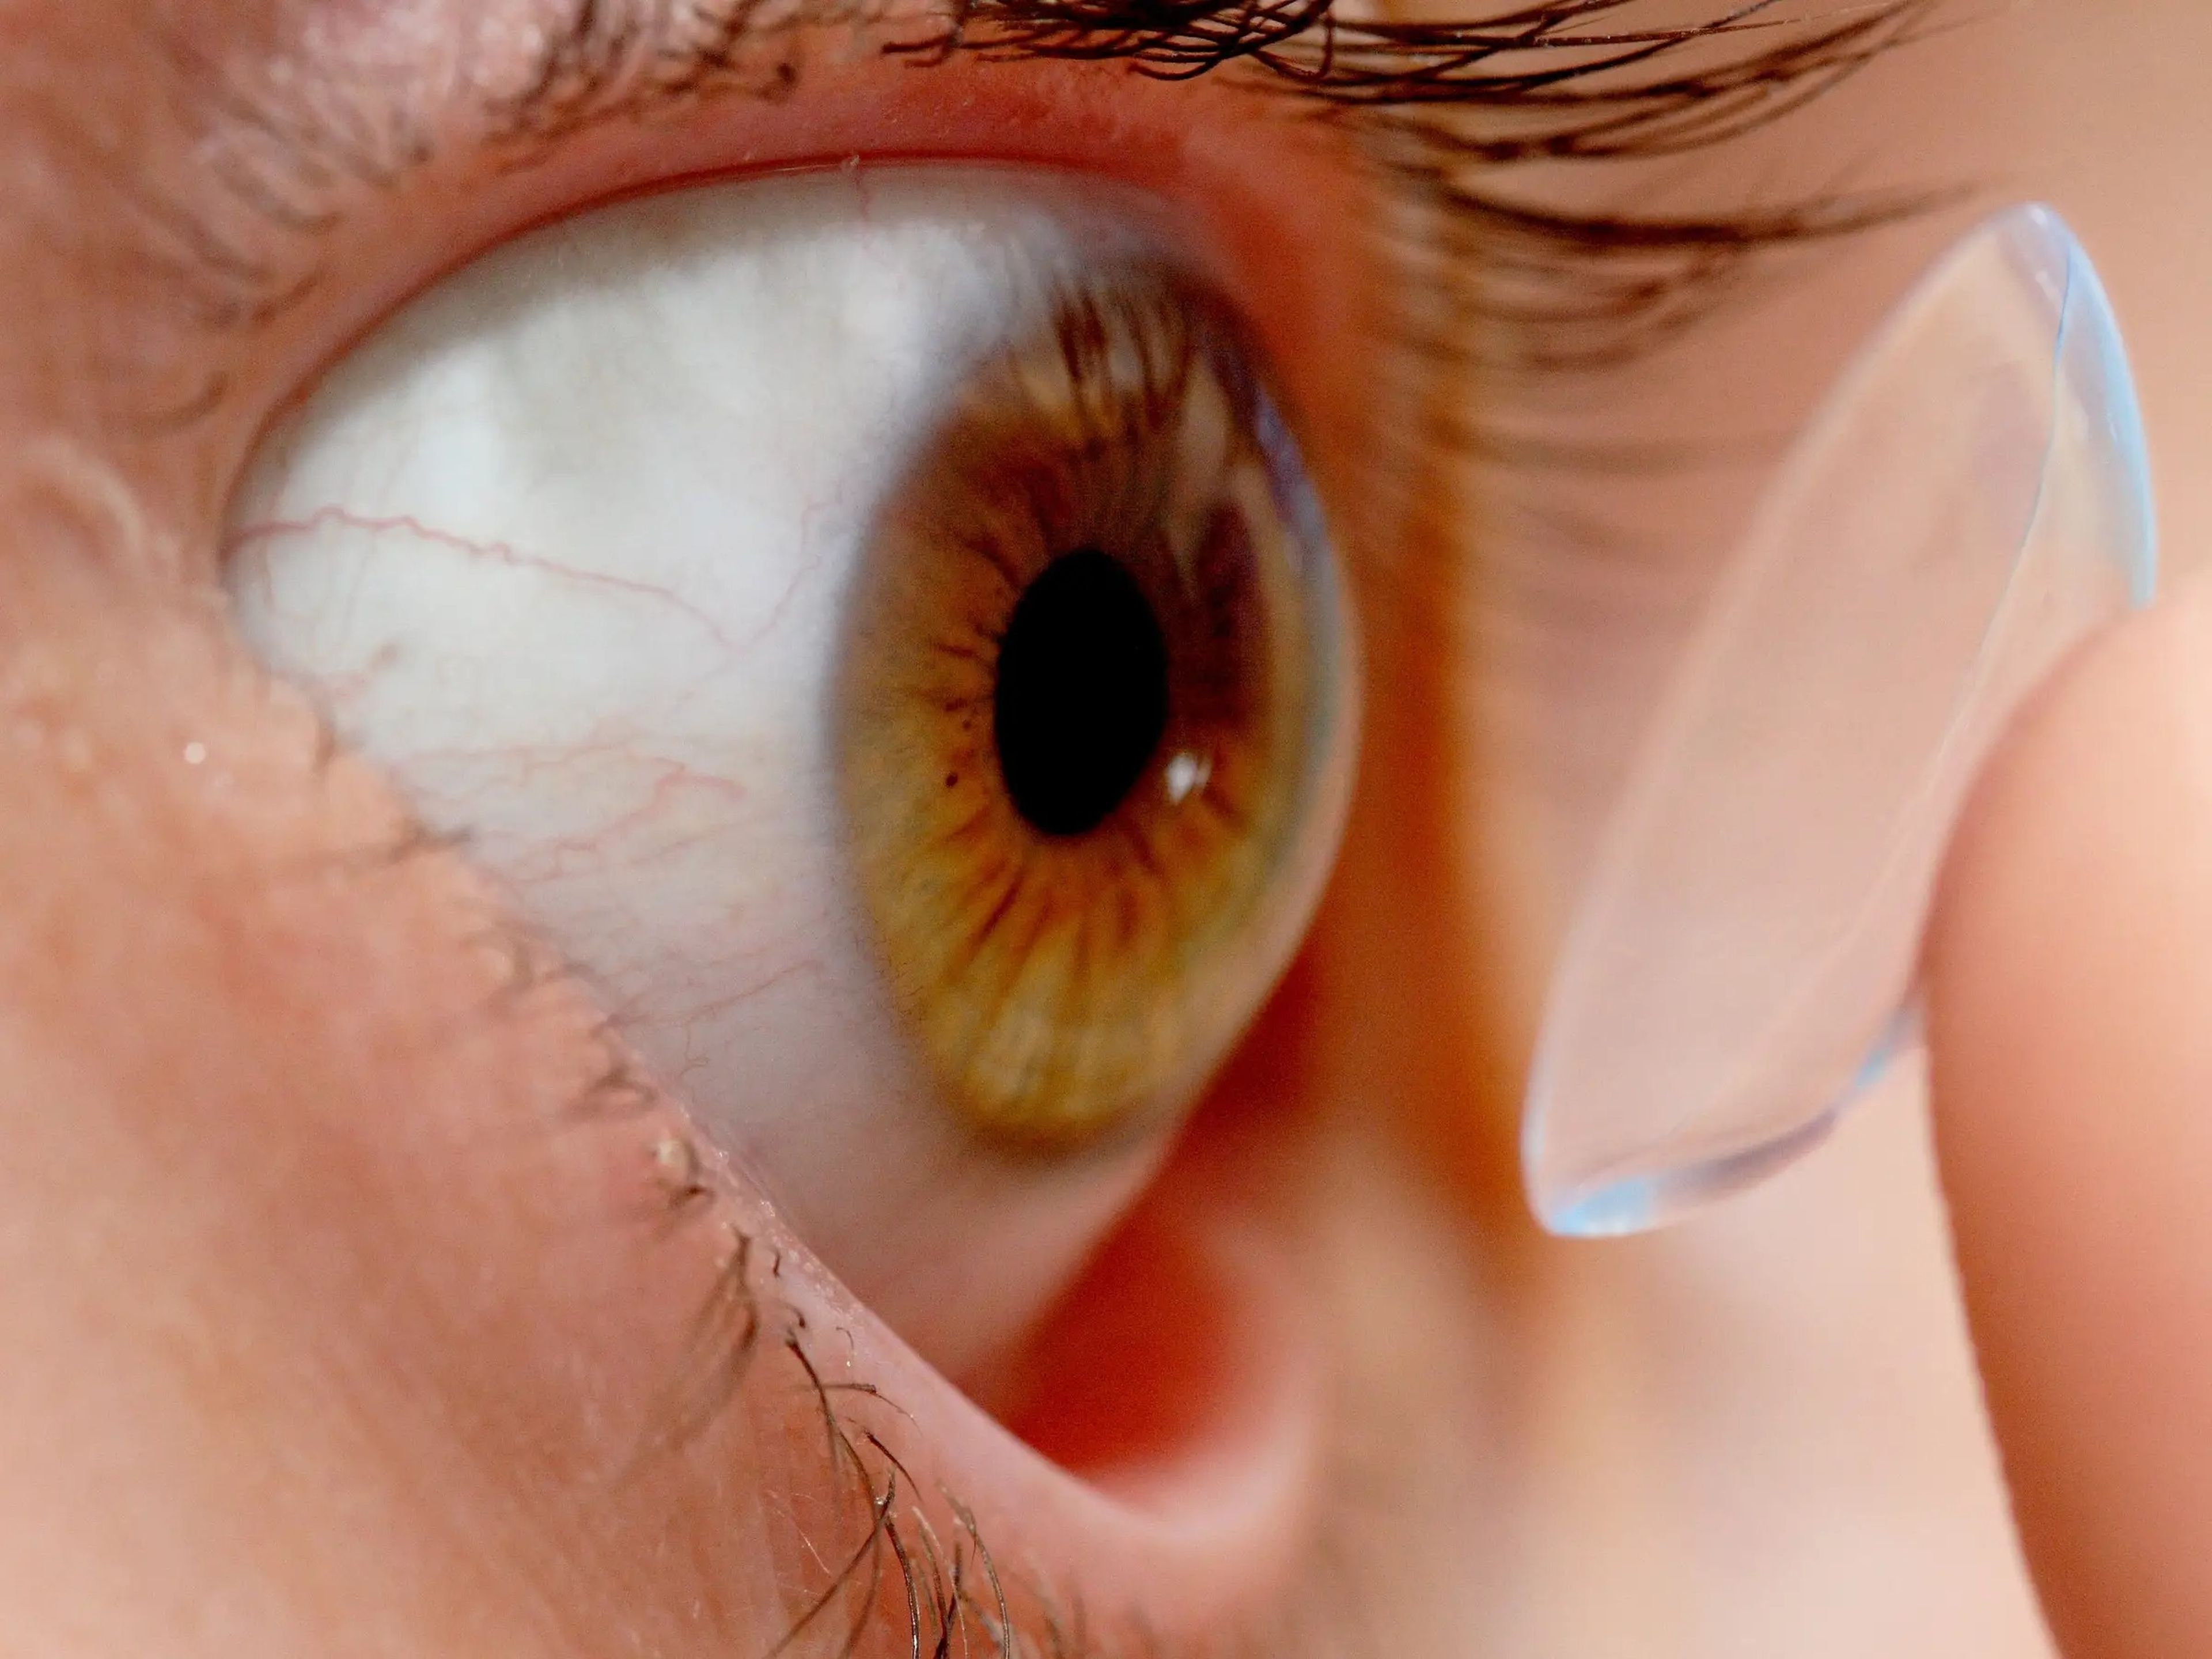 Una persona poniéndose una lente de contacto en el ojo.